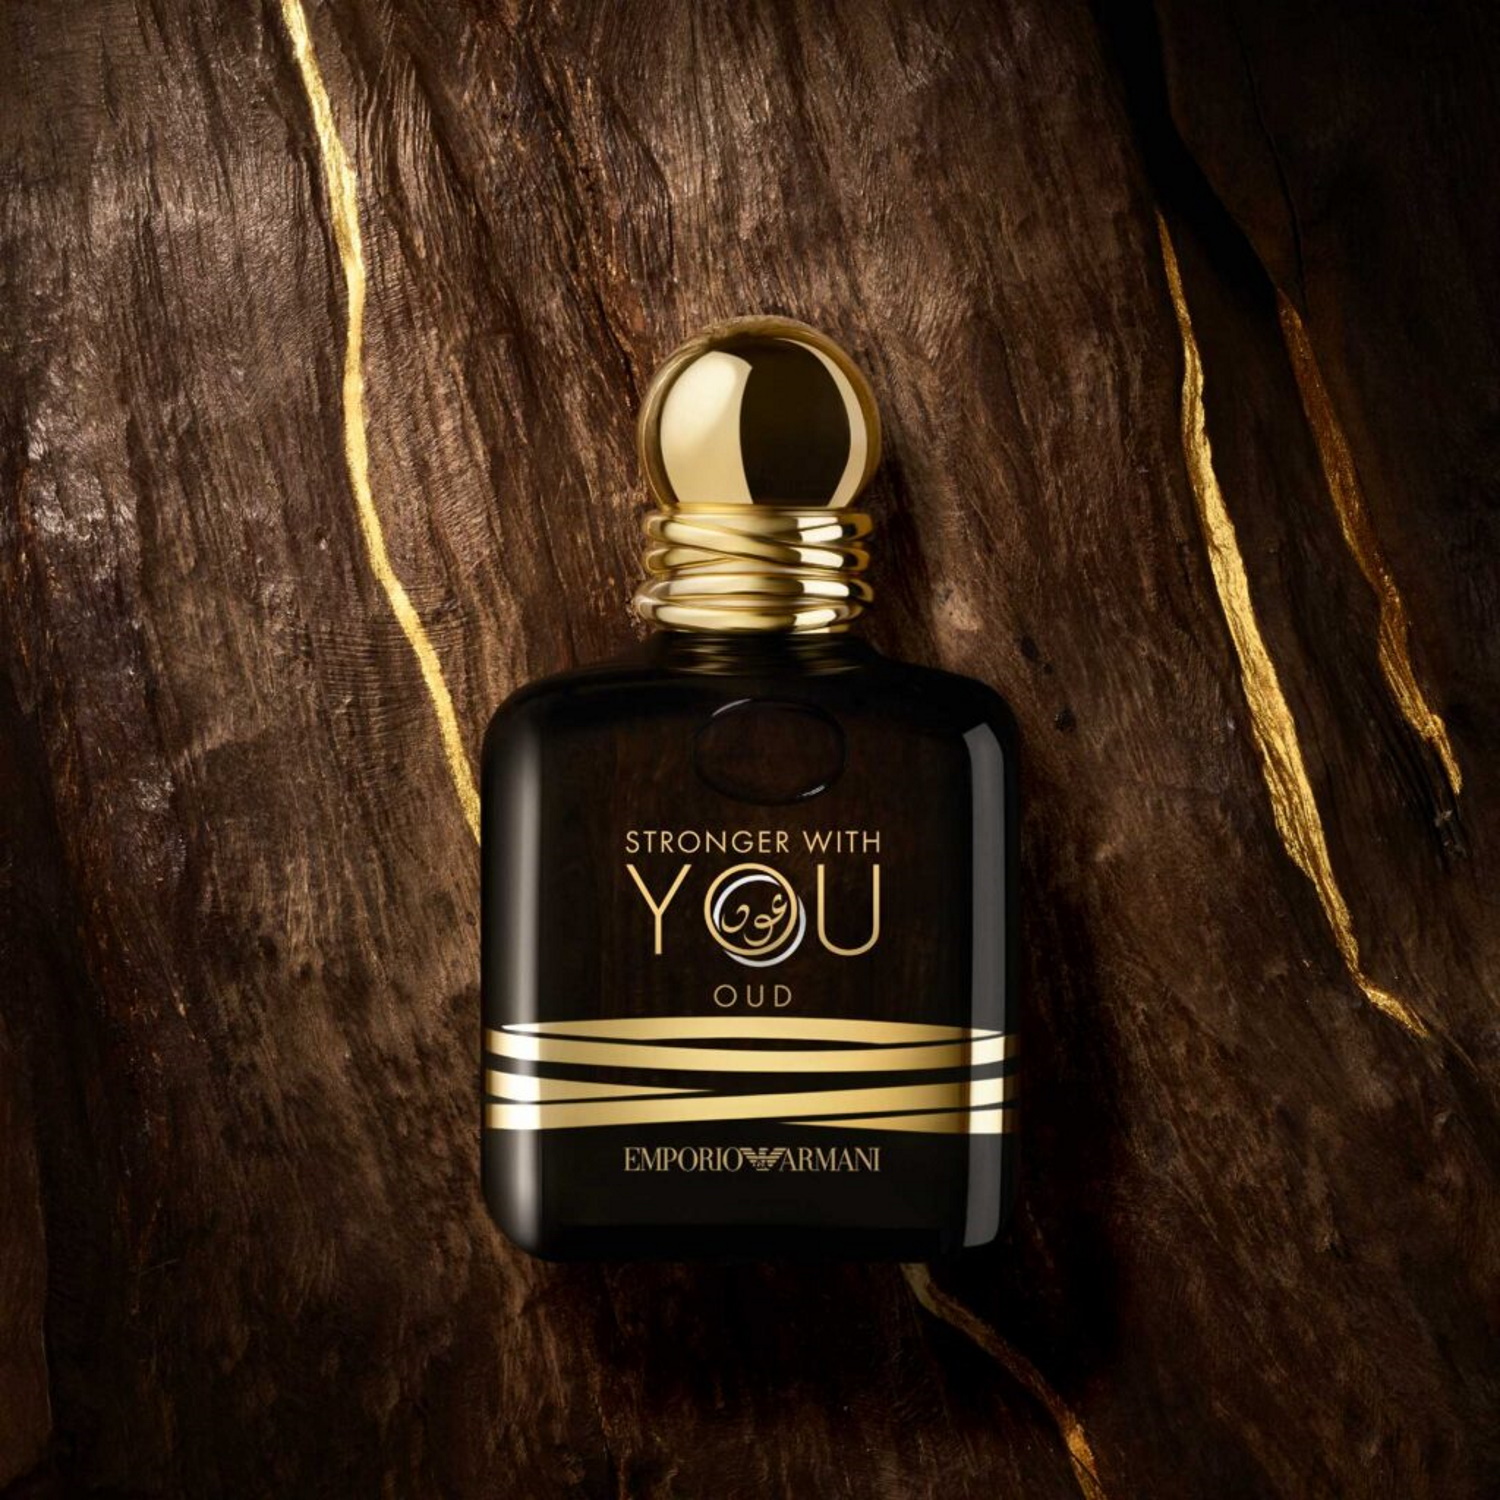 Stronger With You Oud, la nouvelle eau de parfum Emporio Armani